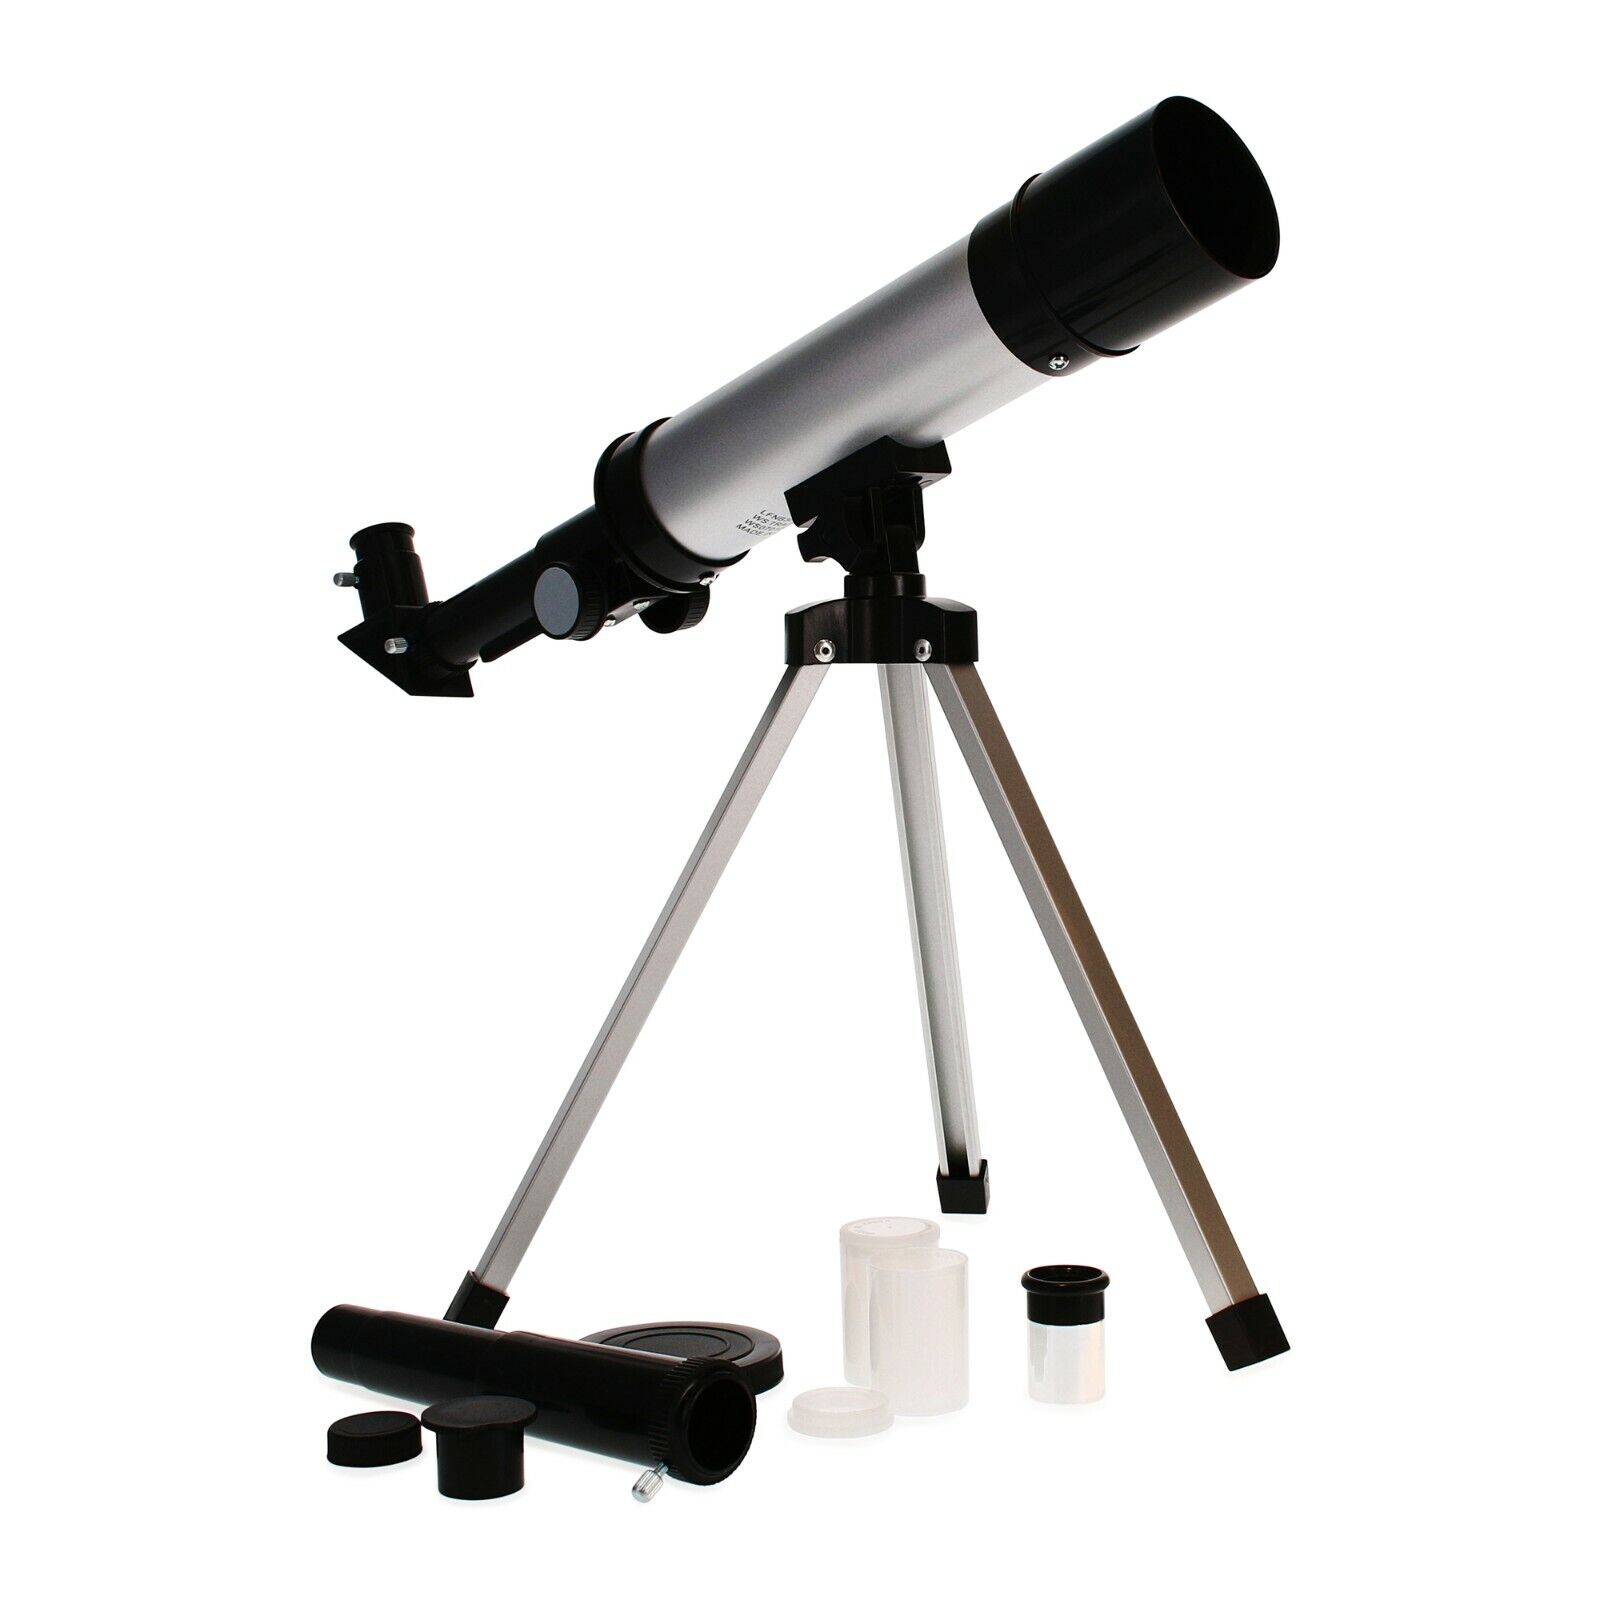 STEM Kids Tabletop Telescope & Tripod Stand, 360mm x 50mm (18x-27x-60x-90x Zoom)